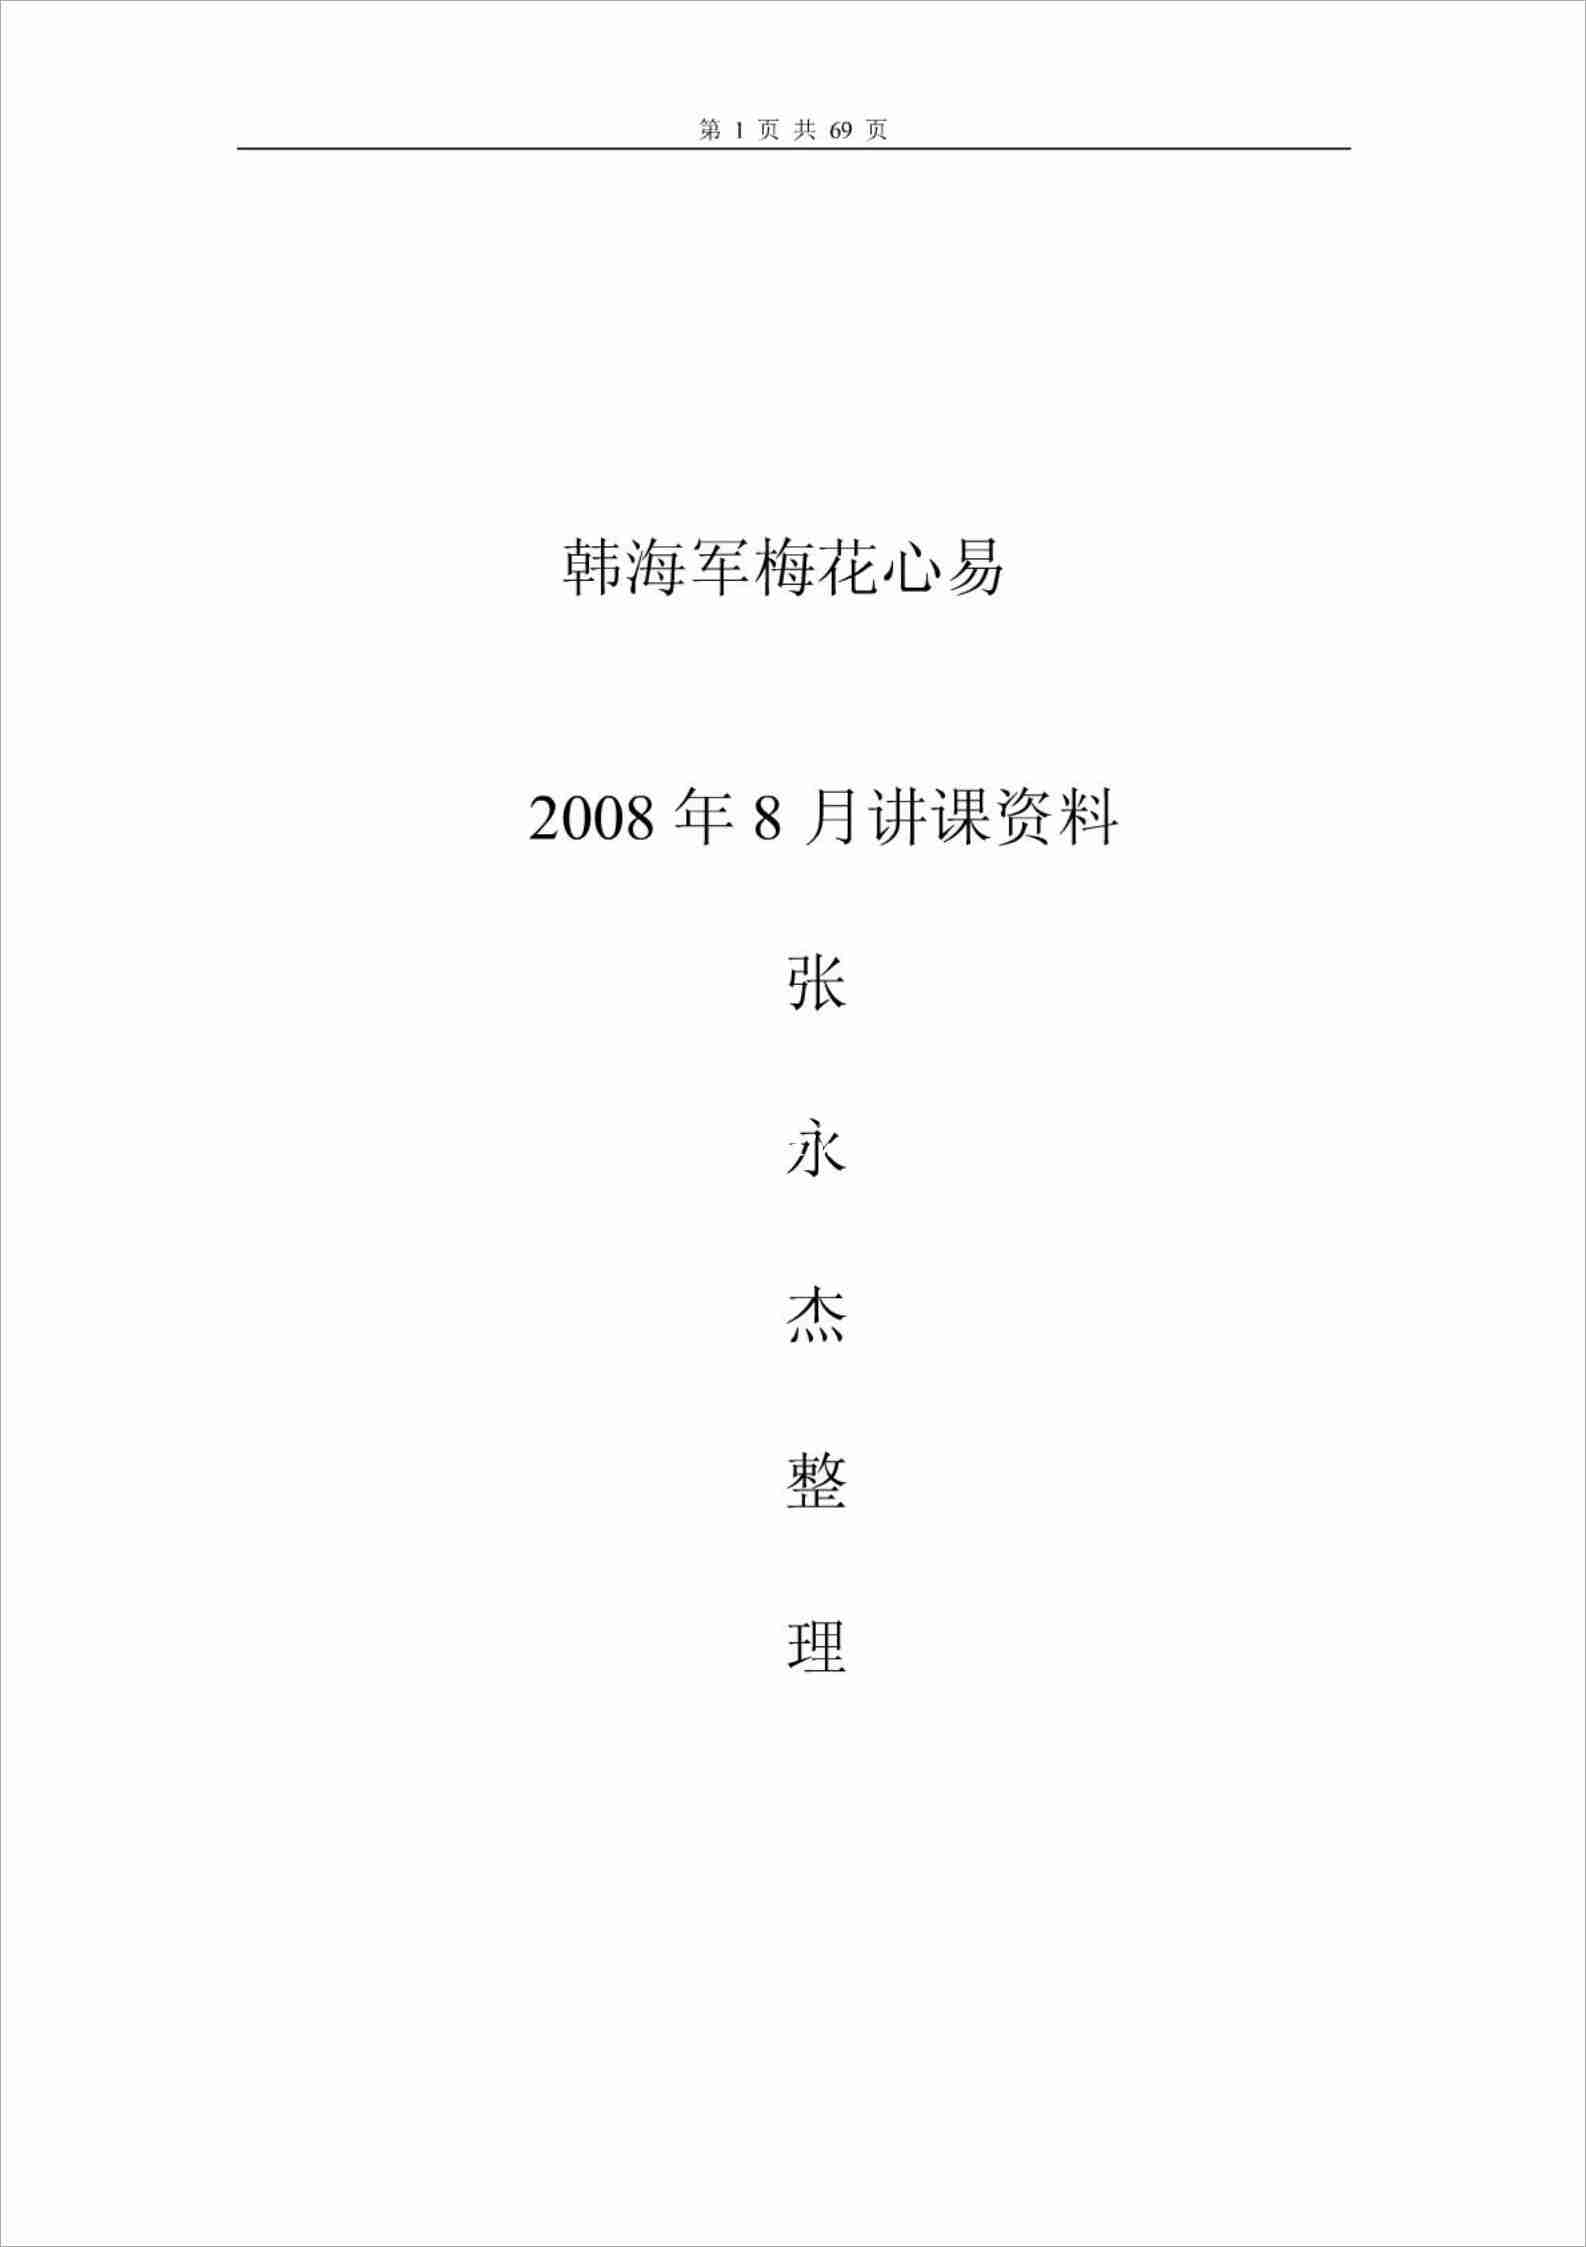 韓海軍講課資料.pdf